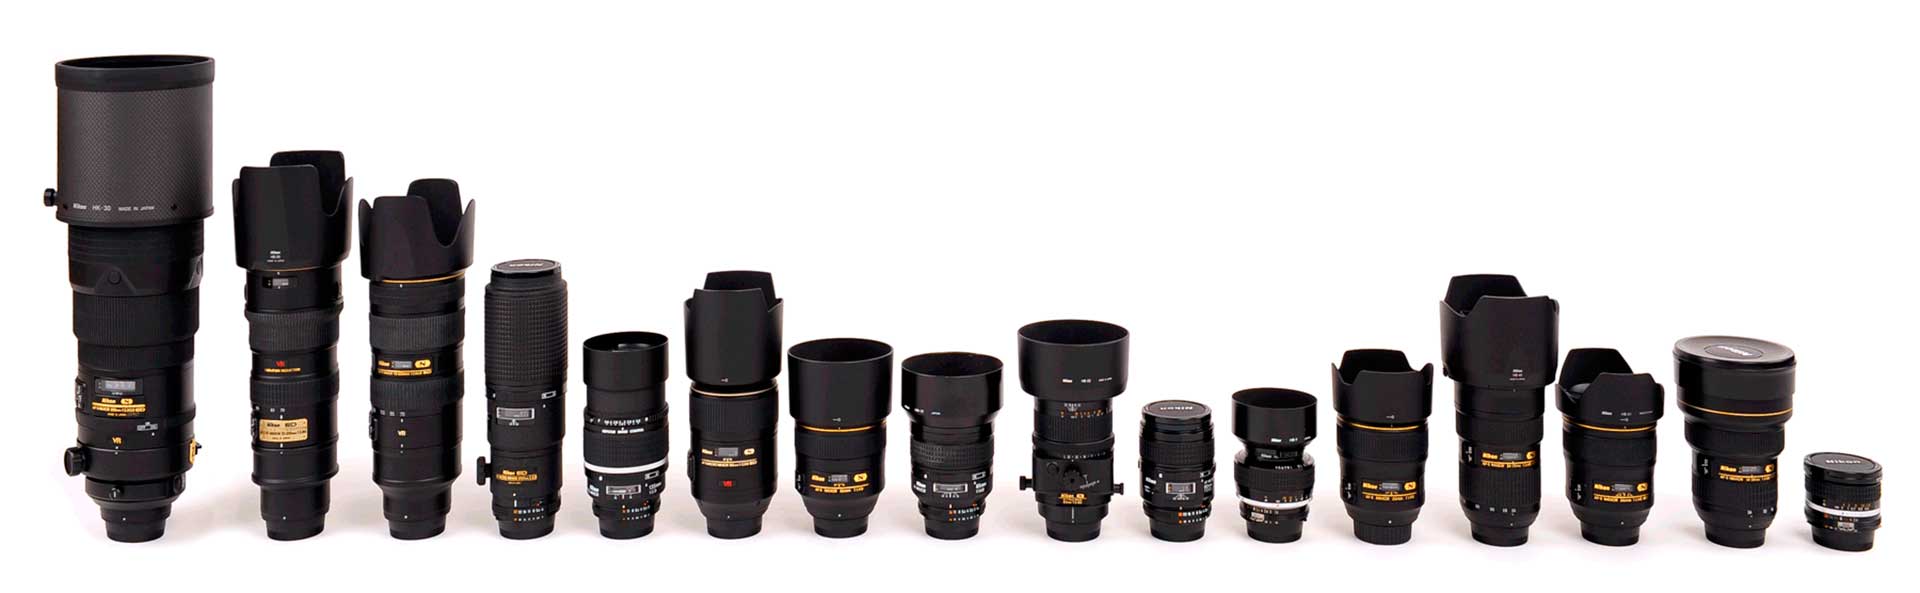 A Nikon Nikkor objektívek néhány videózáshoz használatos darabja